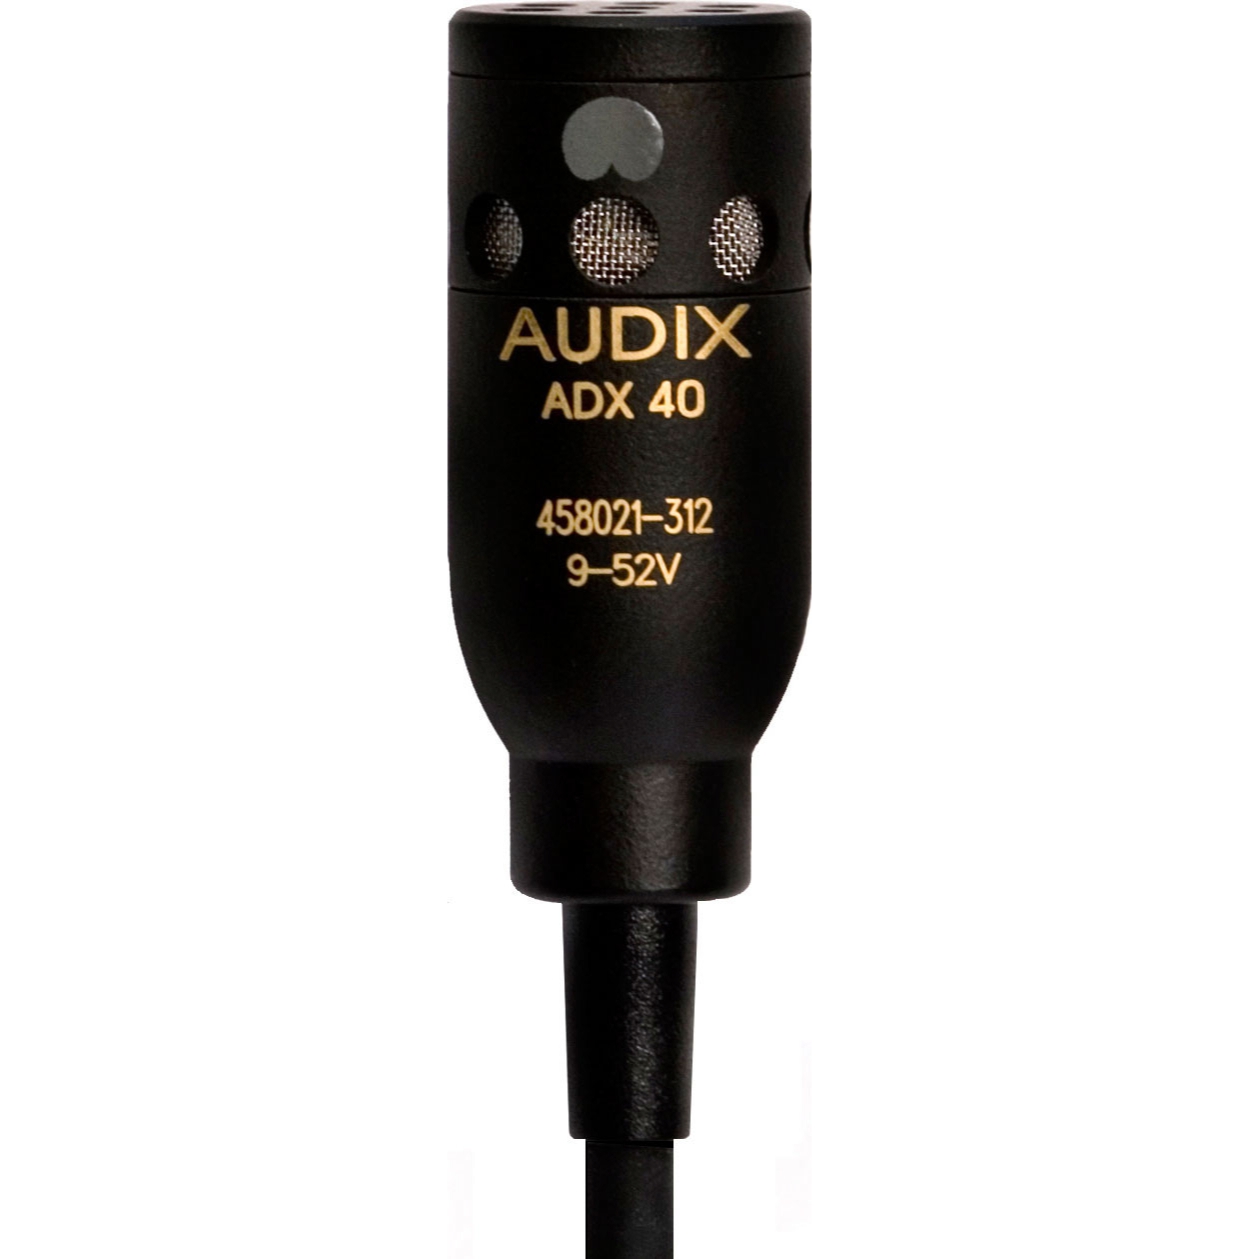 Студийные микрофоны AUDIX ADX40HC микрофон mobicent bm 800 с ветрозащитой кабелем и переходником для телефона на треноге